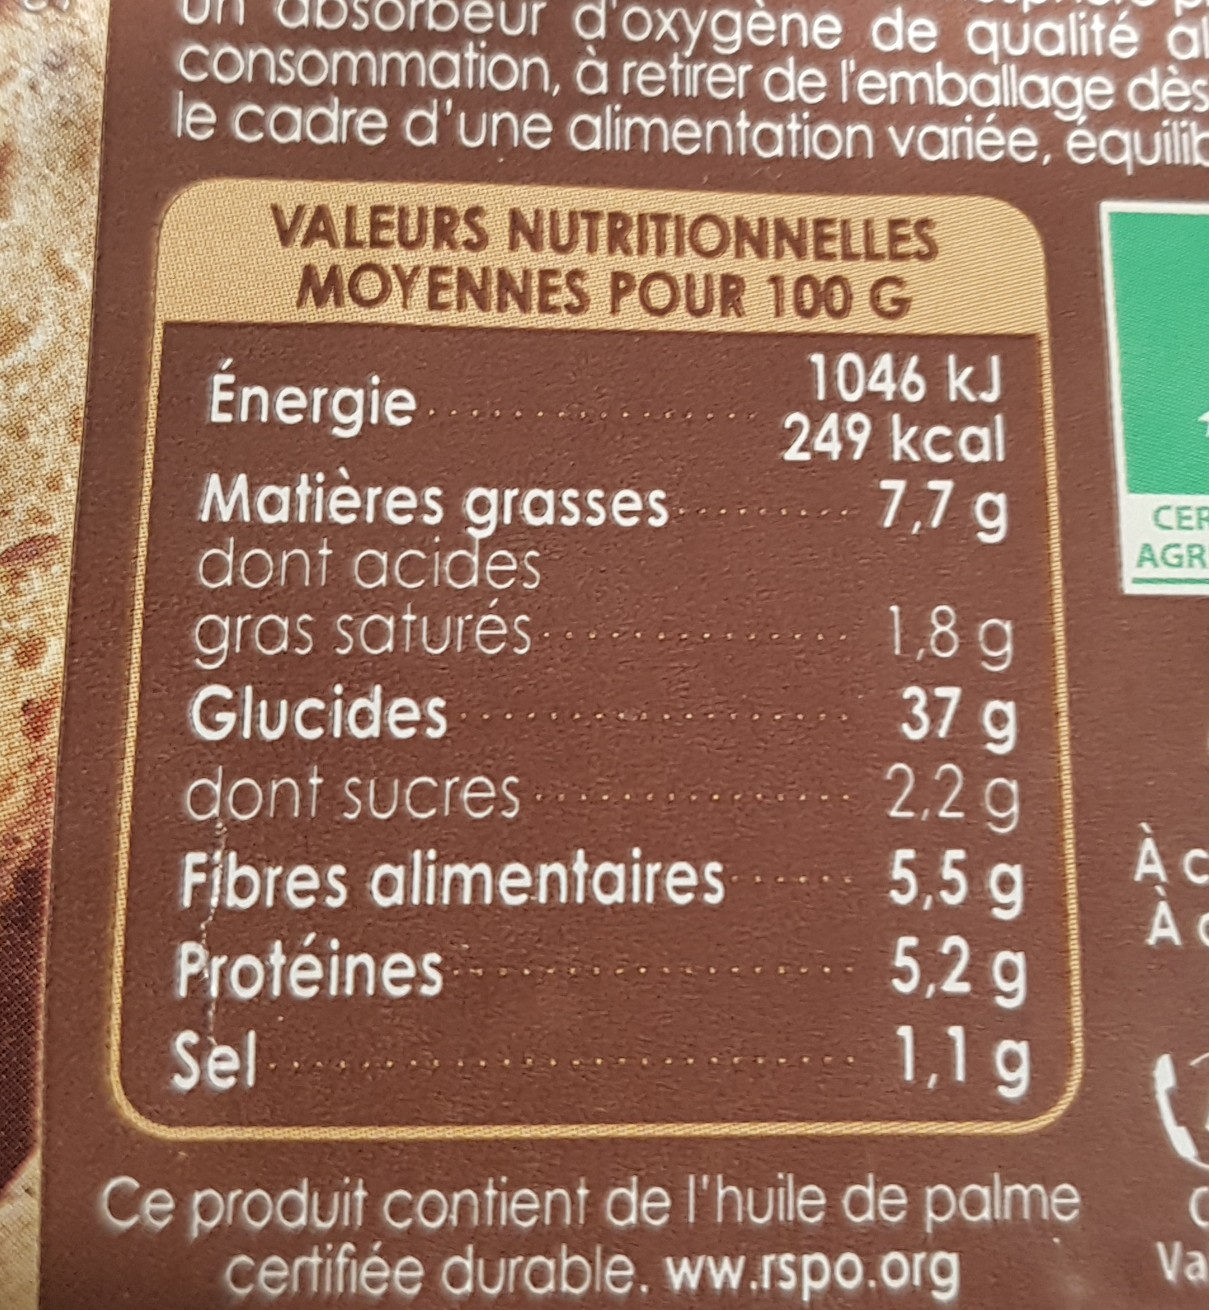 Grand bio aux grains - Nutrition facts - fr